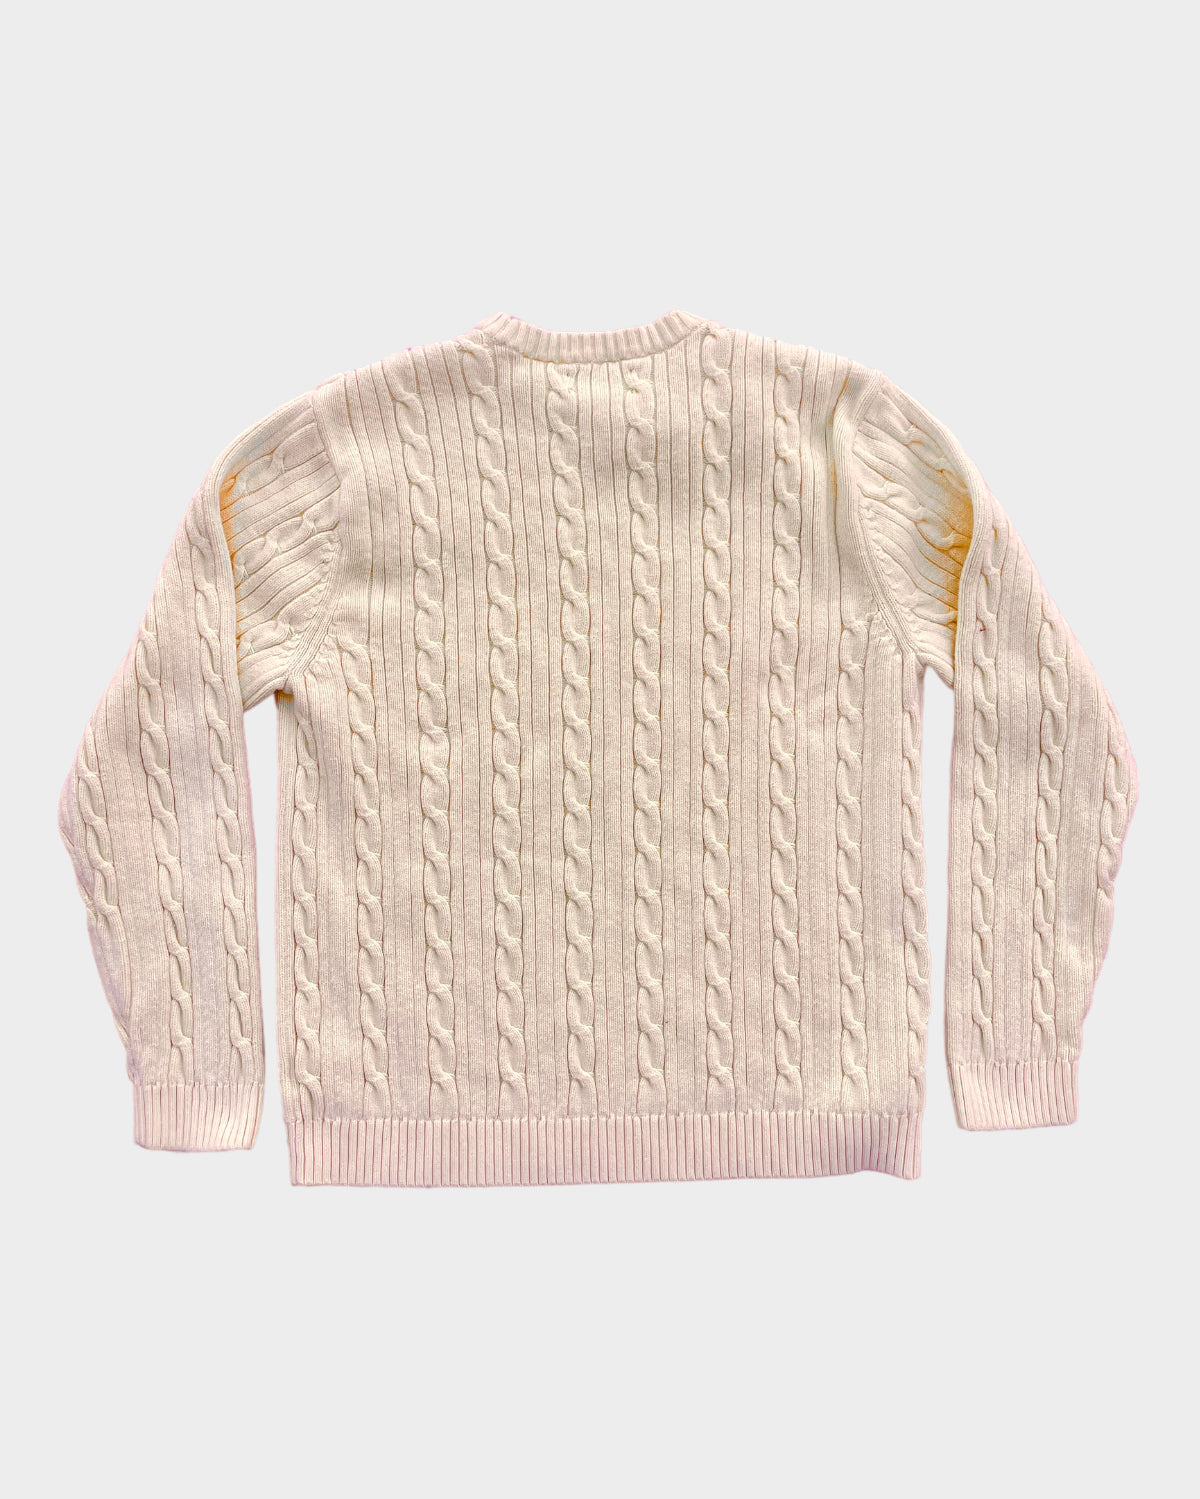 Yellow Chaps Grandpa Sweater (L)